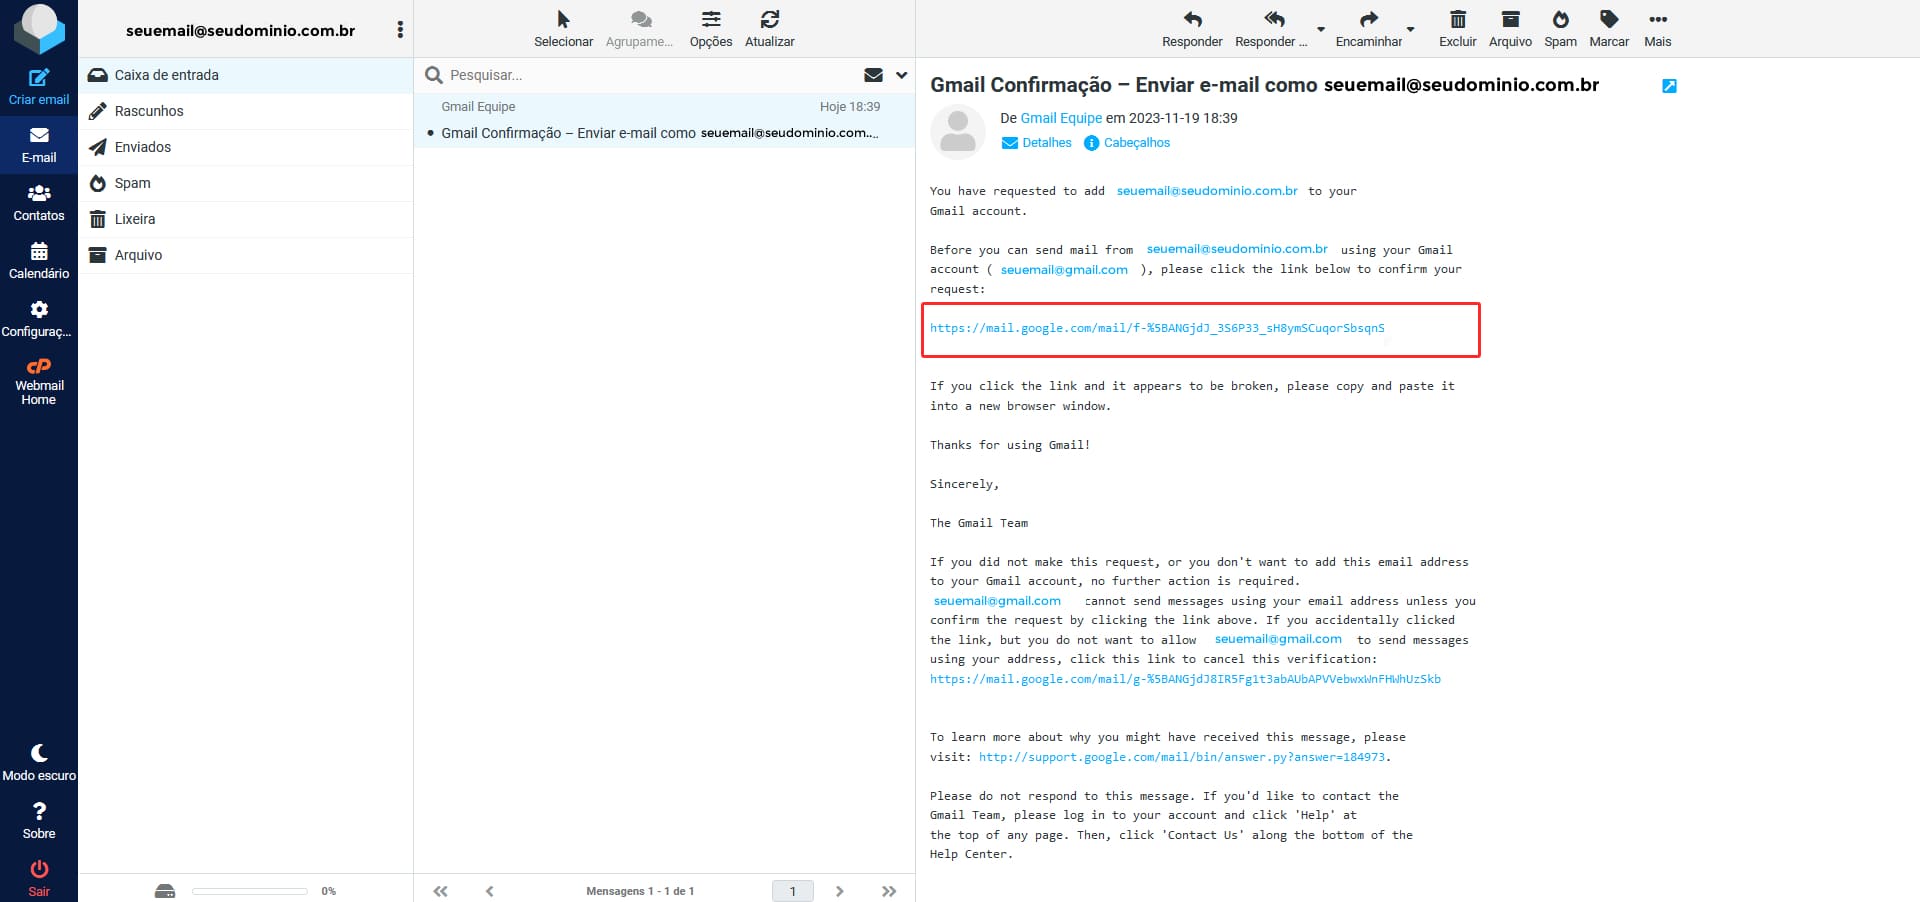 Imagem mostrando o e-mail de confirmação de email profissional no Gmail, nele consta um link de confirmação